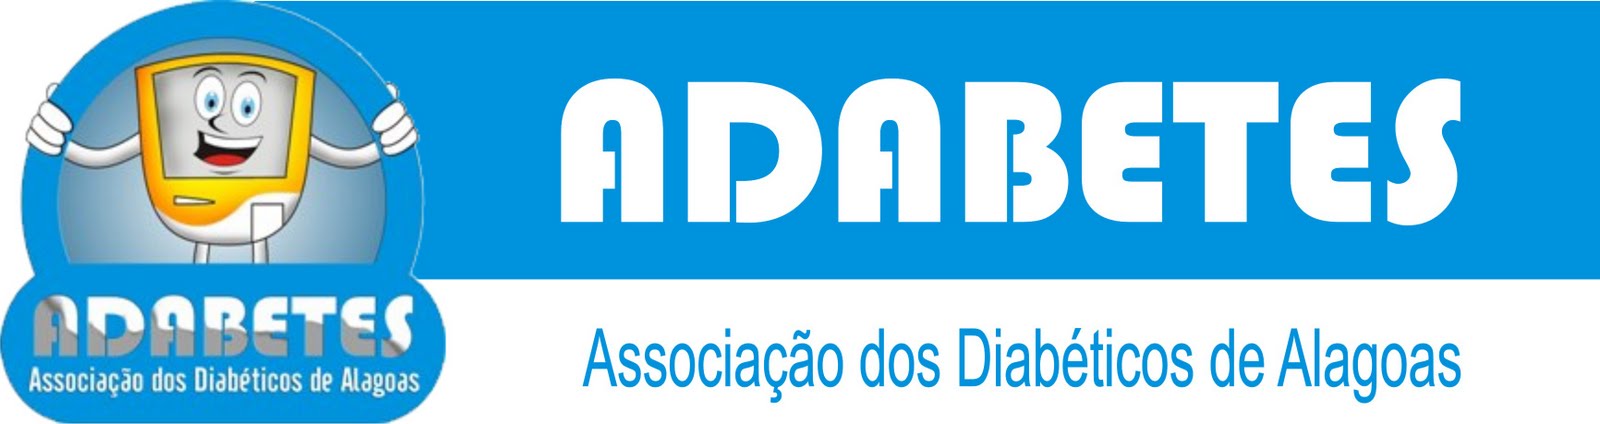 ADABETES - Associação dos Diabéticos de Alagoas